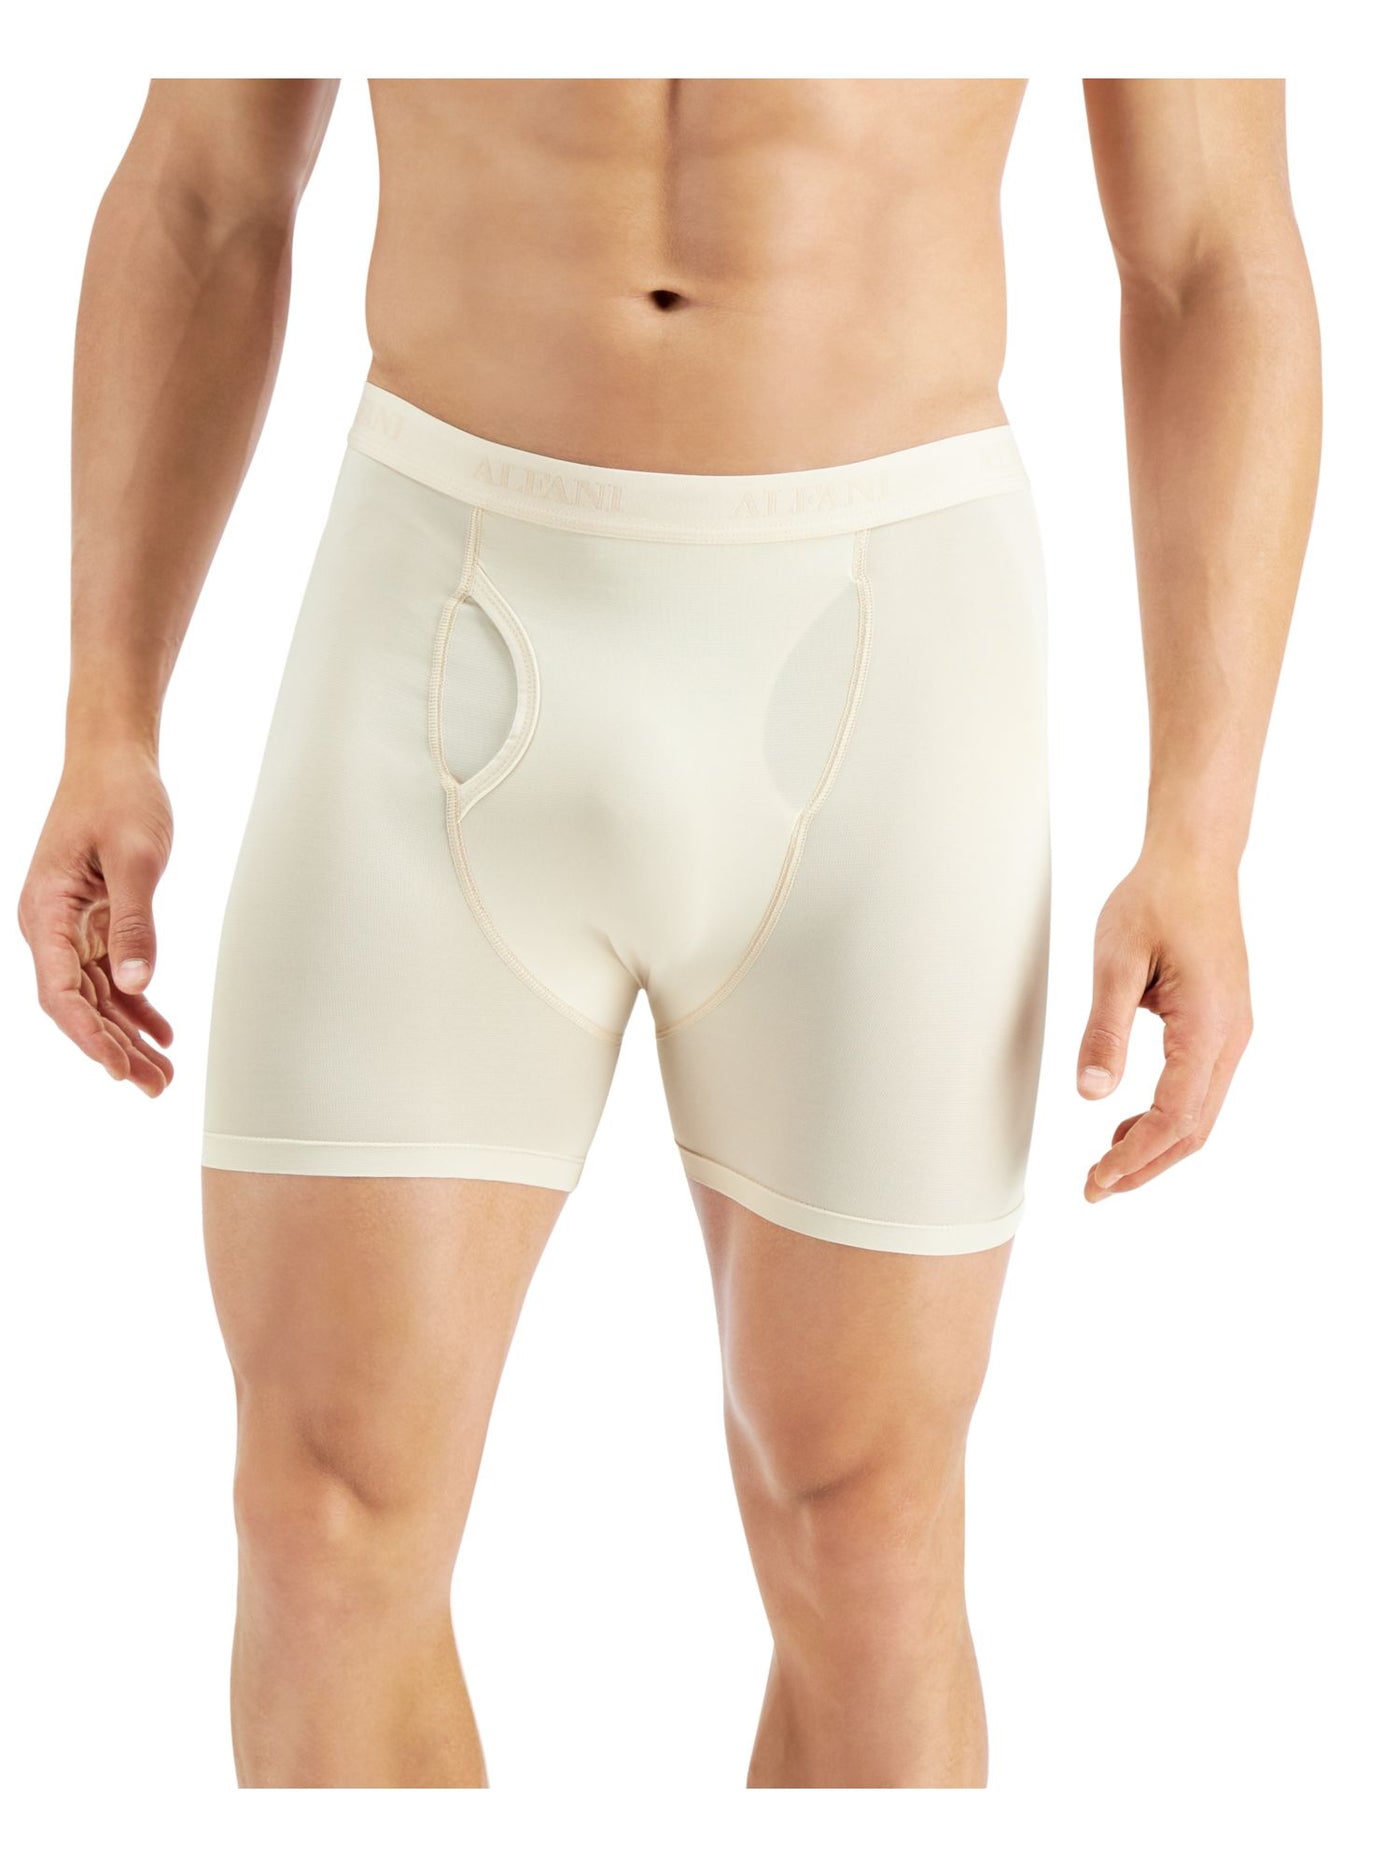 ALFATECH BY ALFANI Intimates White Mesh Quick-Dry Boxer Brief Underwear L